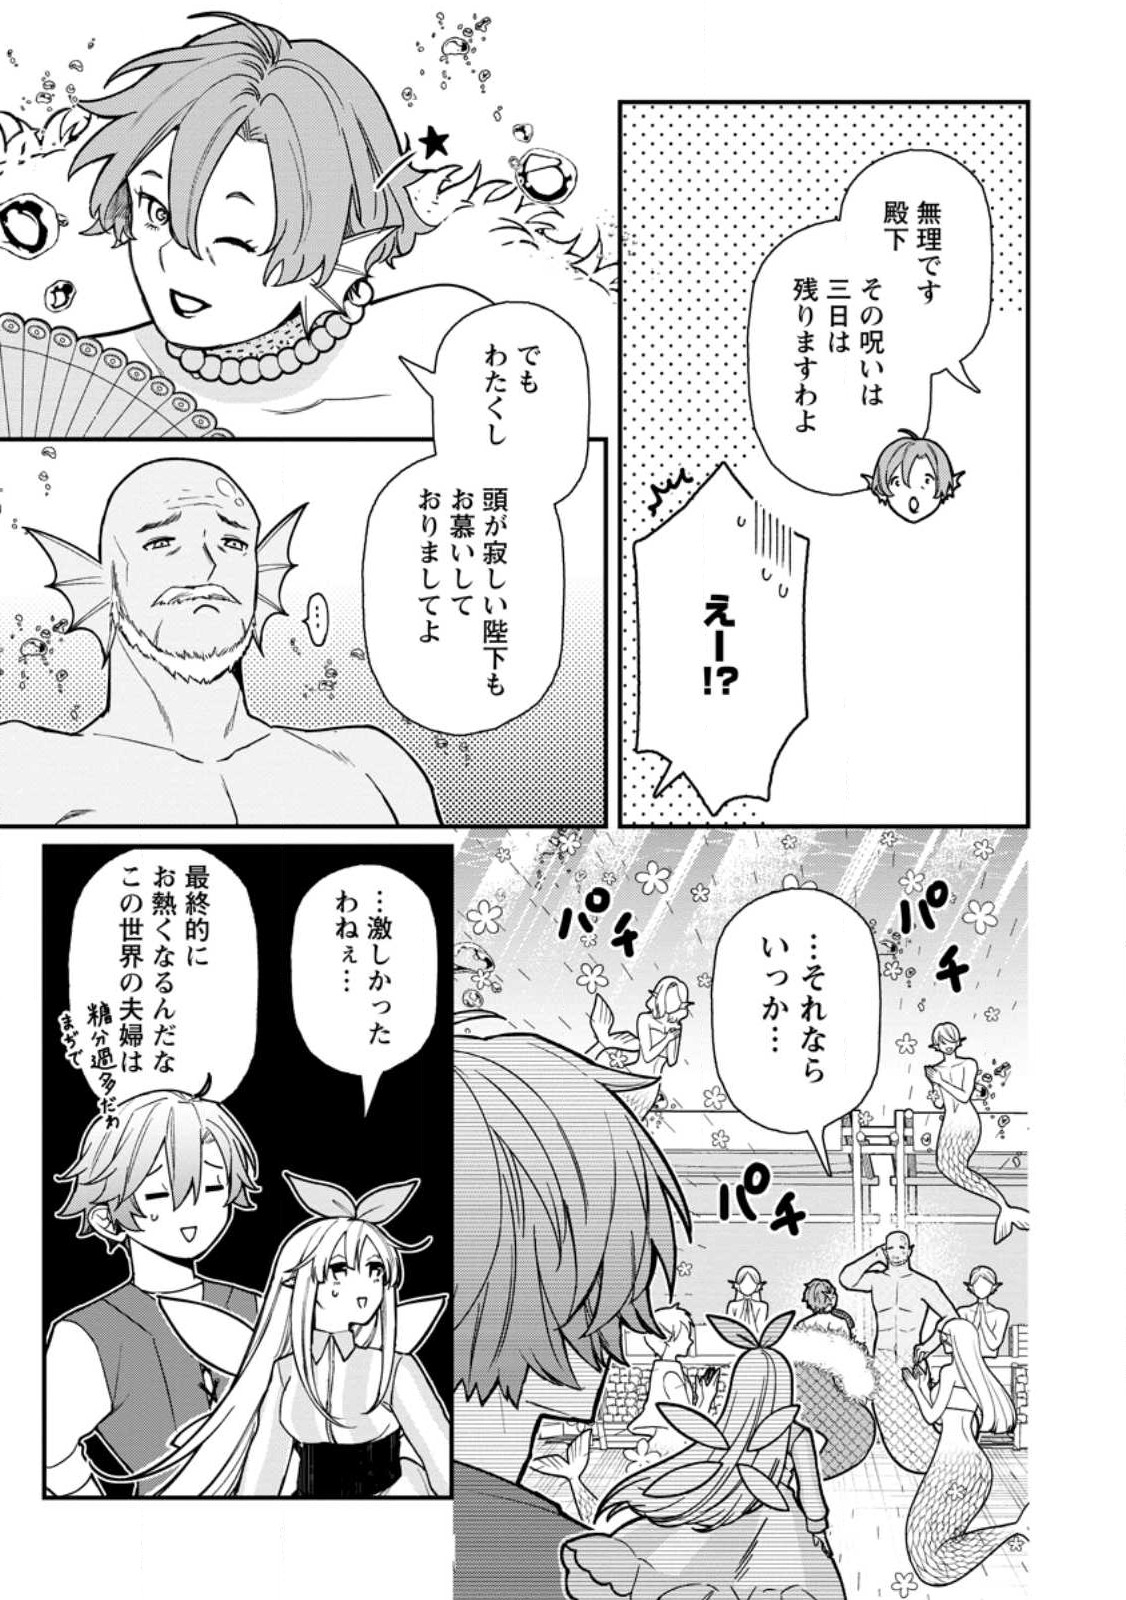 Murabito Tensei: Saikyou no Slow Life - Chapter 64.3 - Page 2